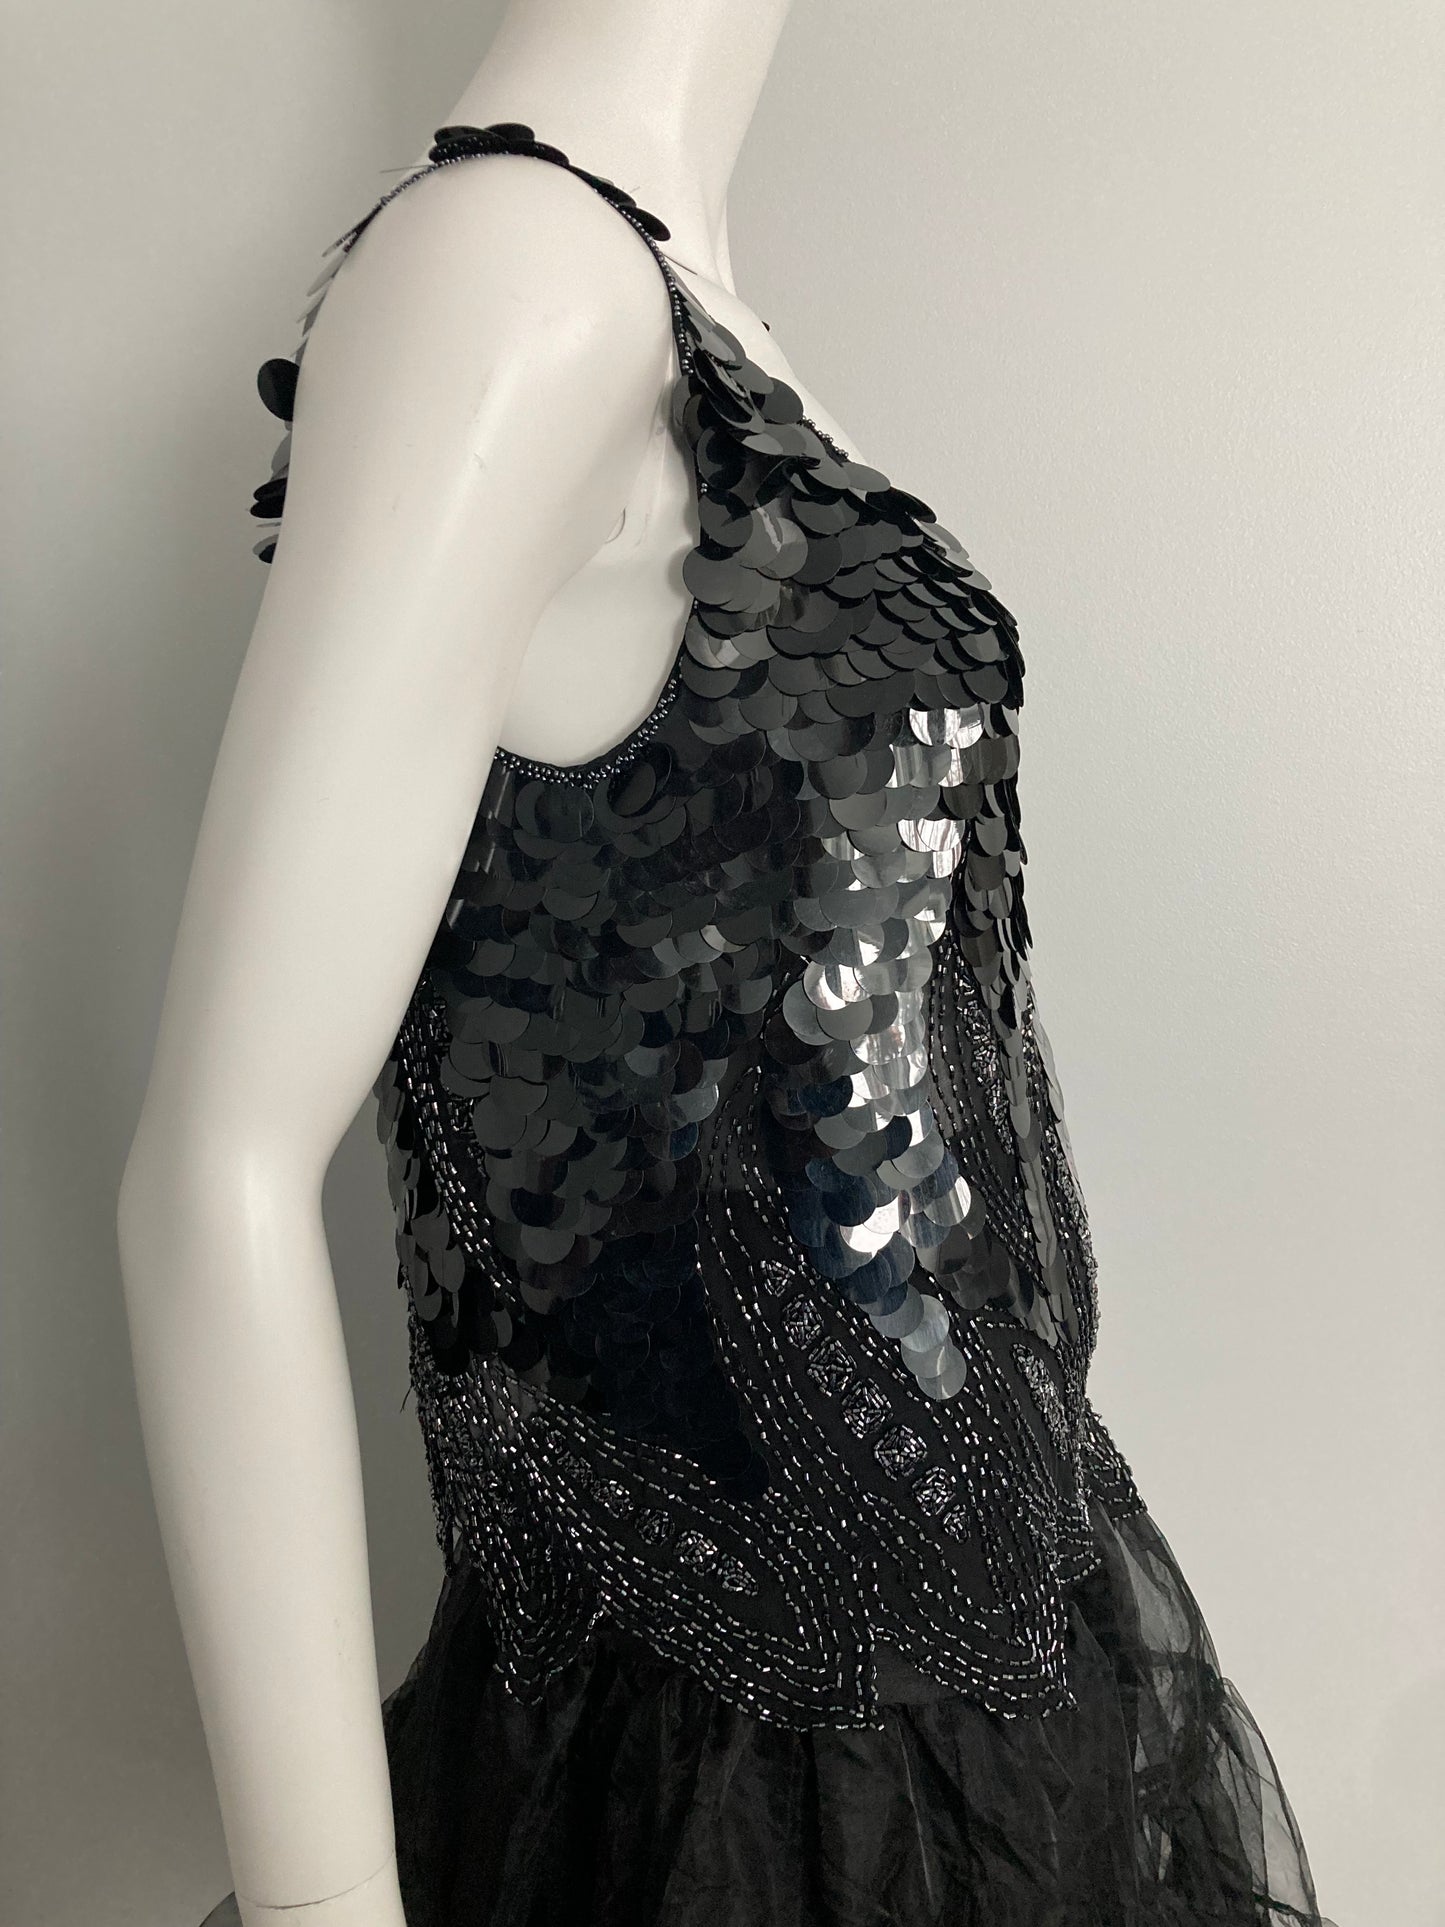 1980s Silk Black Paillette Sequin Beaded Top, Size L